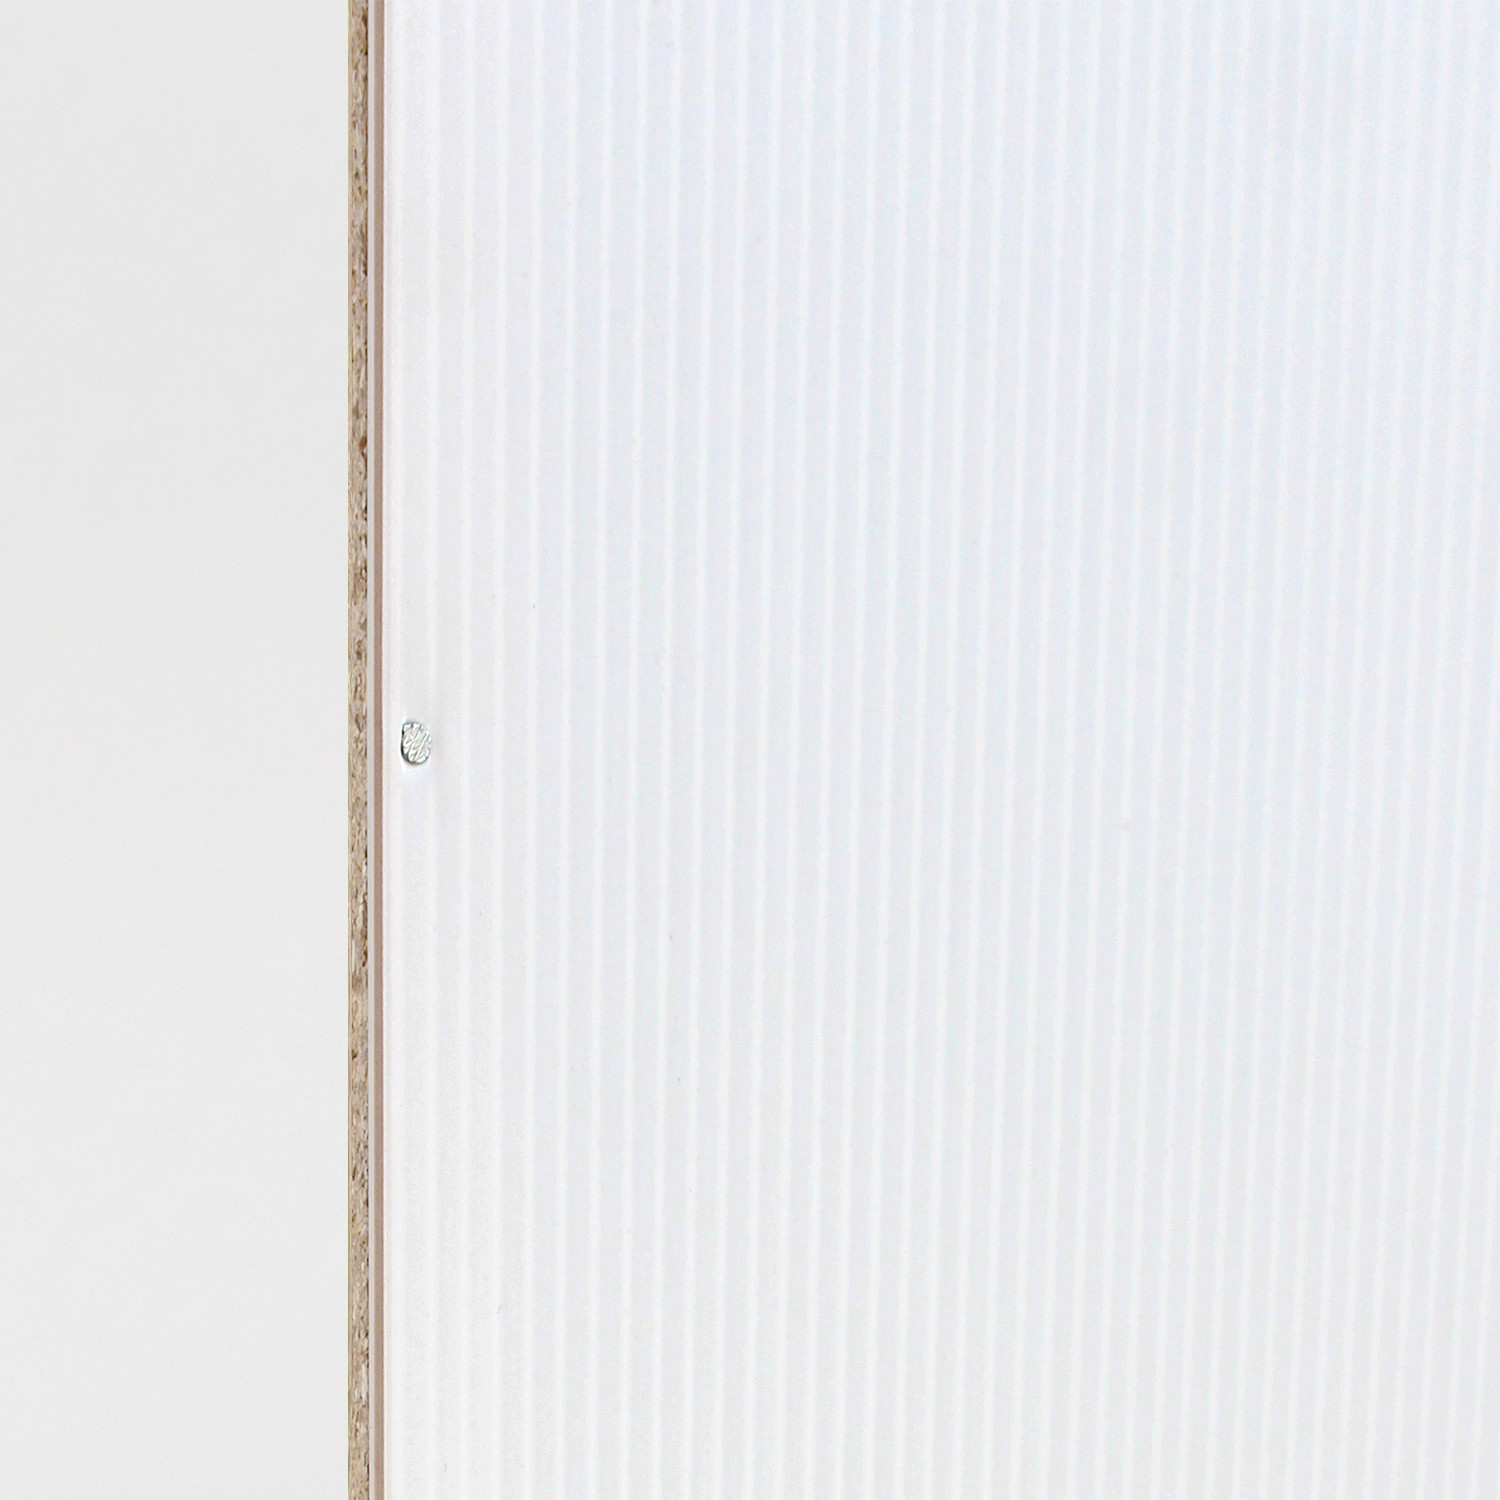 IDEA Шкаф общий 4-дверный PLUTON жемчужно-белый